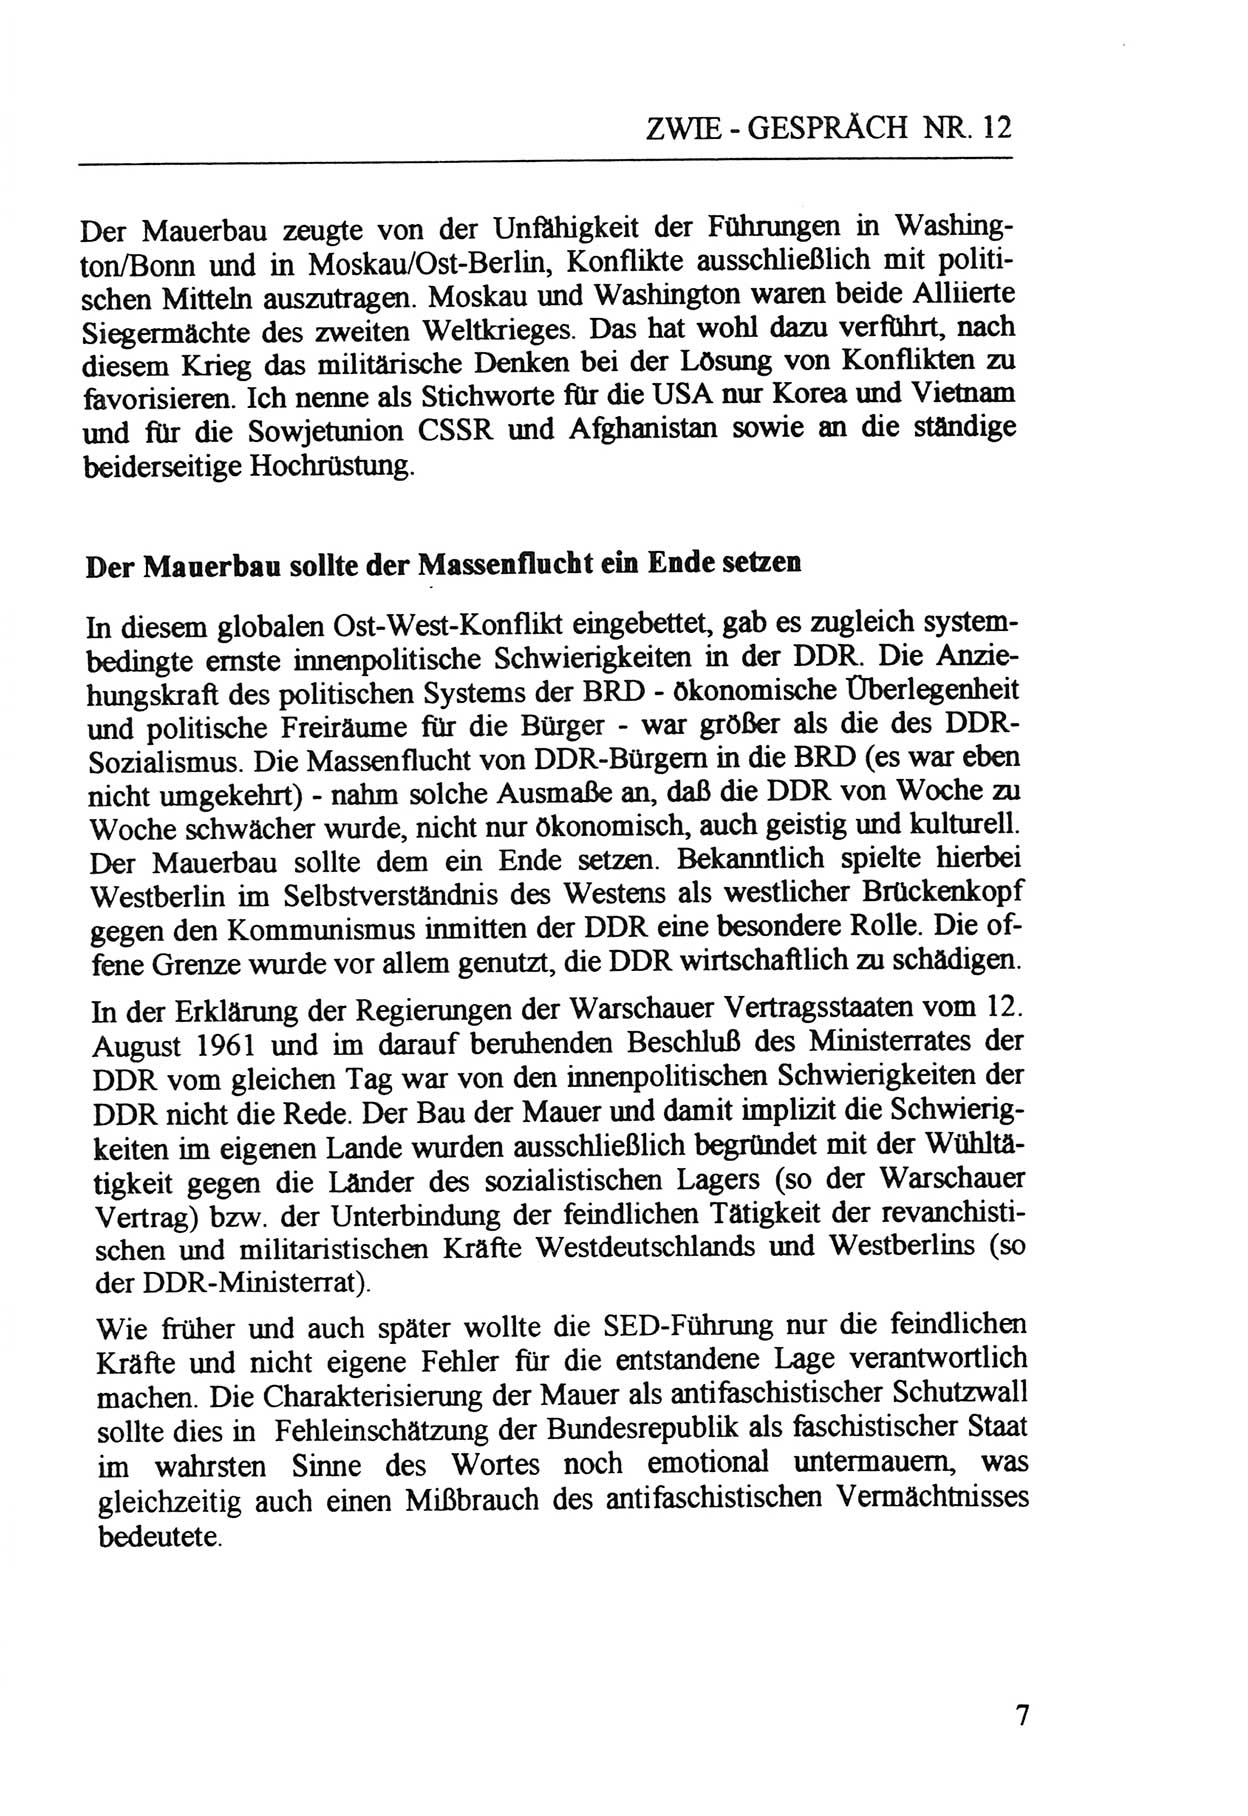 Zwie-Gespräch, Beiträge zur Aufarbeitung der Staatssicherheits-Vergangenheit [Deutsche Demokratische Republik (DDR)], Ausgabe Nr. 12, Berlin 1993, Seite 7 (Zwie-Gespr. Ausg. 12 1993, S. 7)